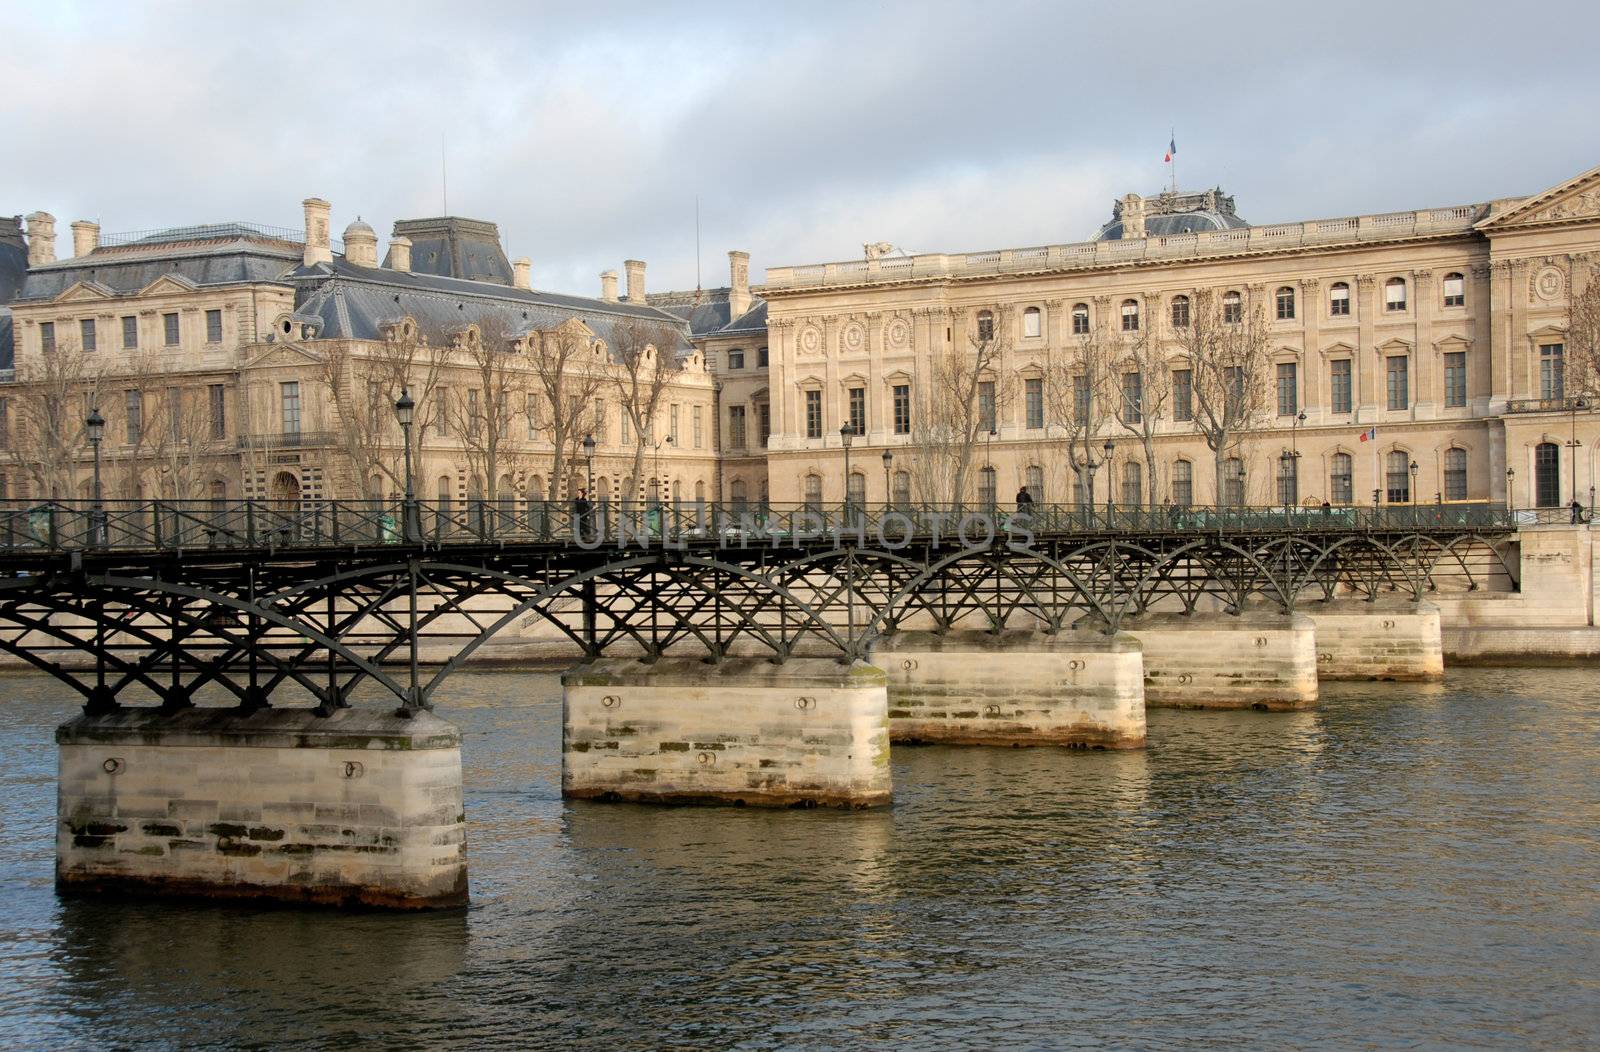 Pont des Arts, Paris, on the Seine River